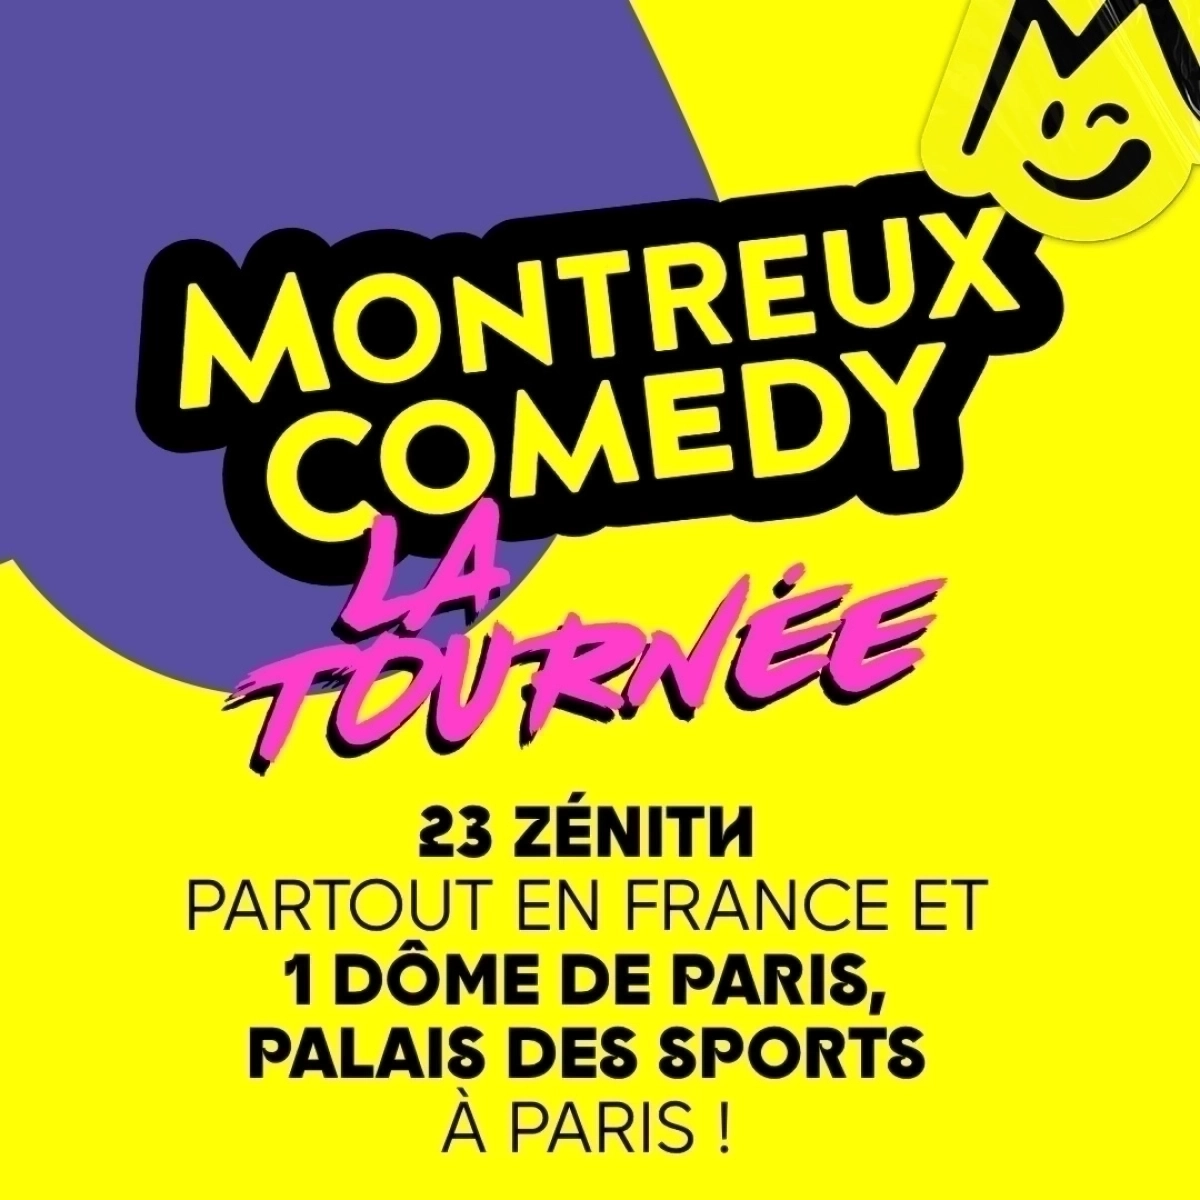 Montreux Comedy - La Tournee at Zenith Pau Tickets